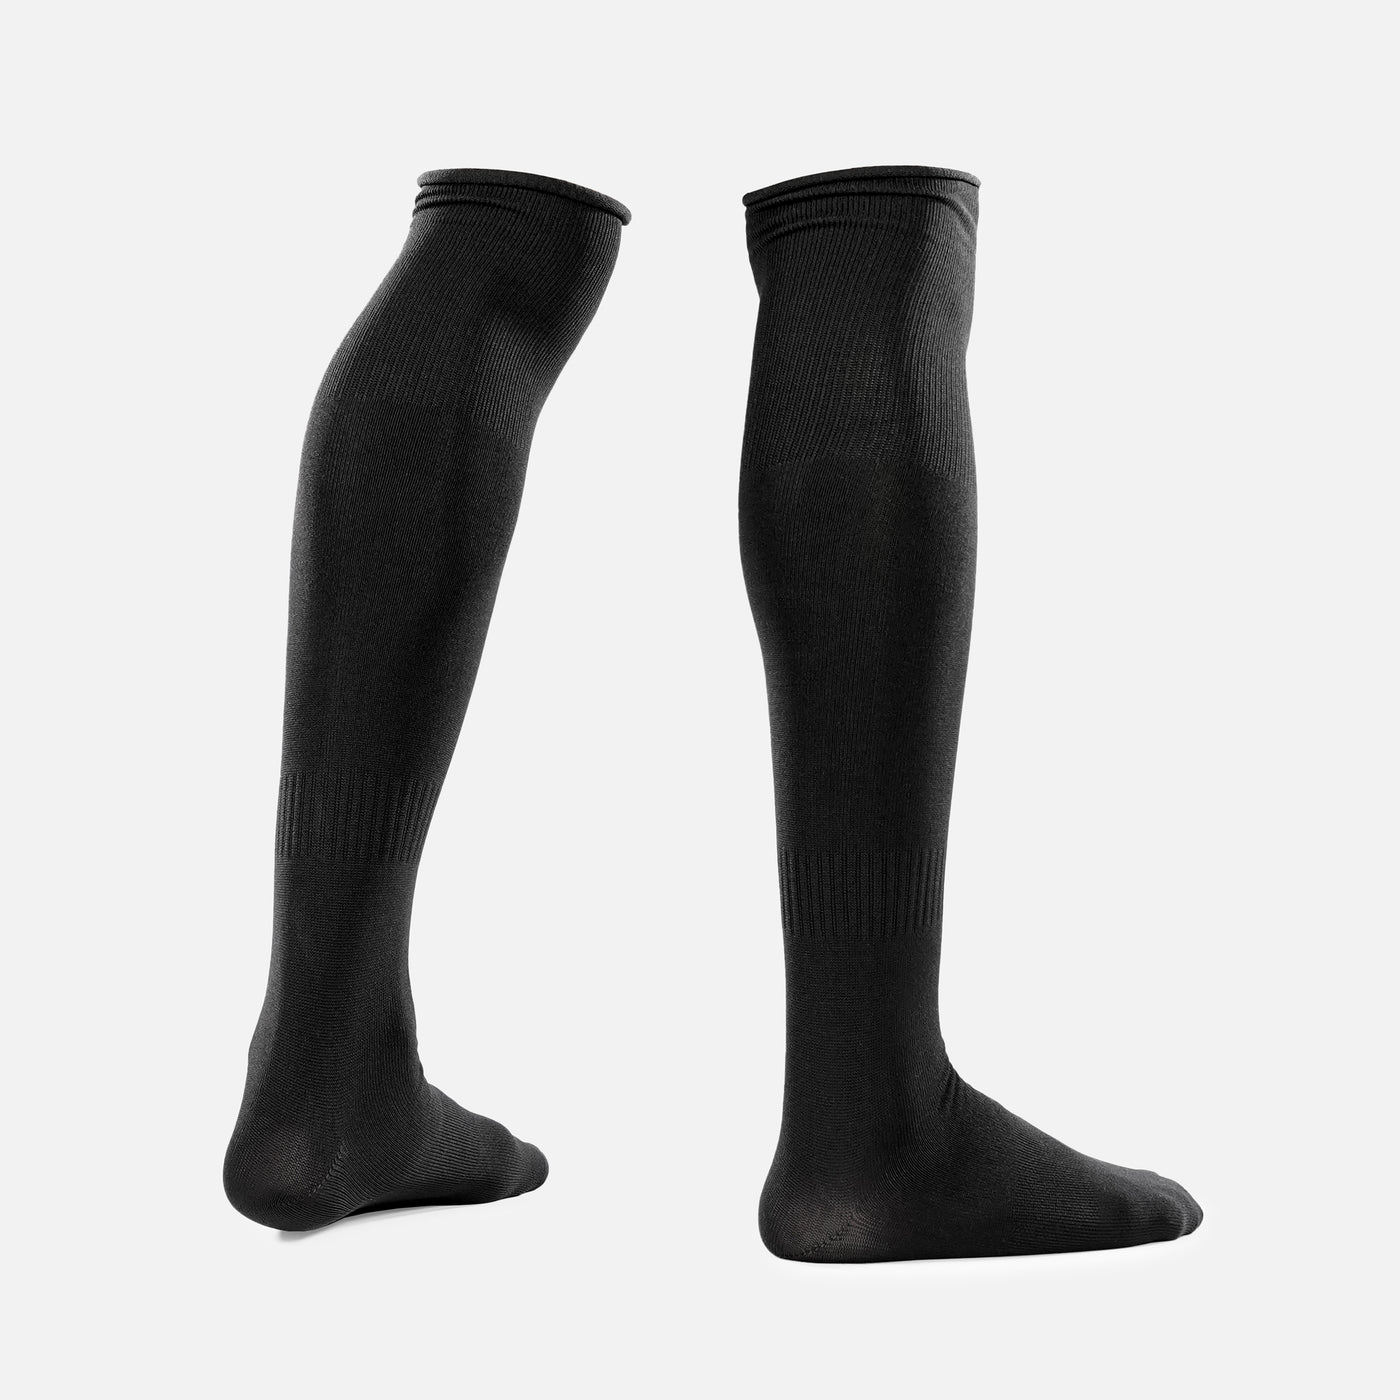 Basic Black Over The Knee Sport Socks